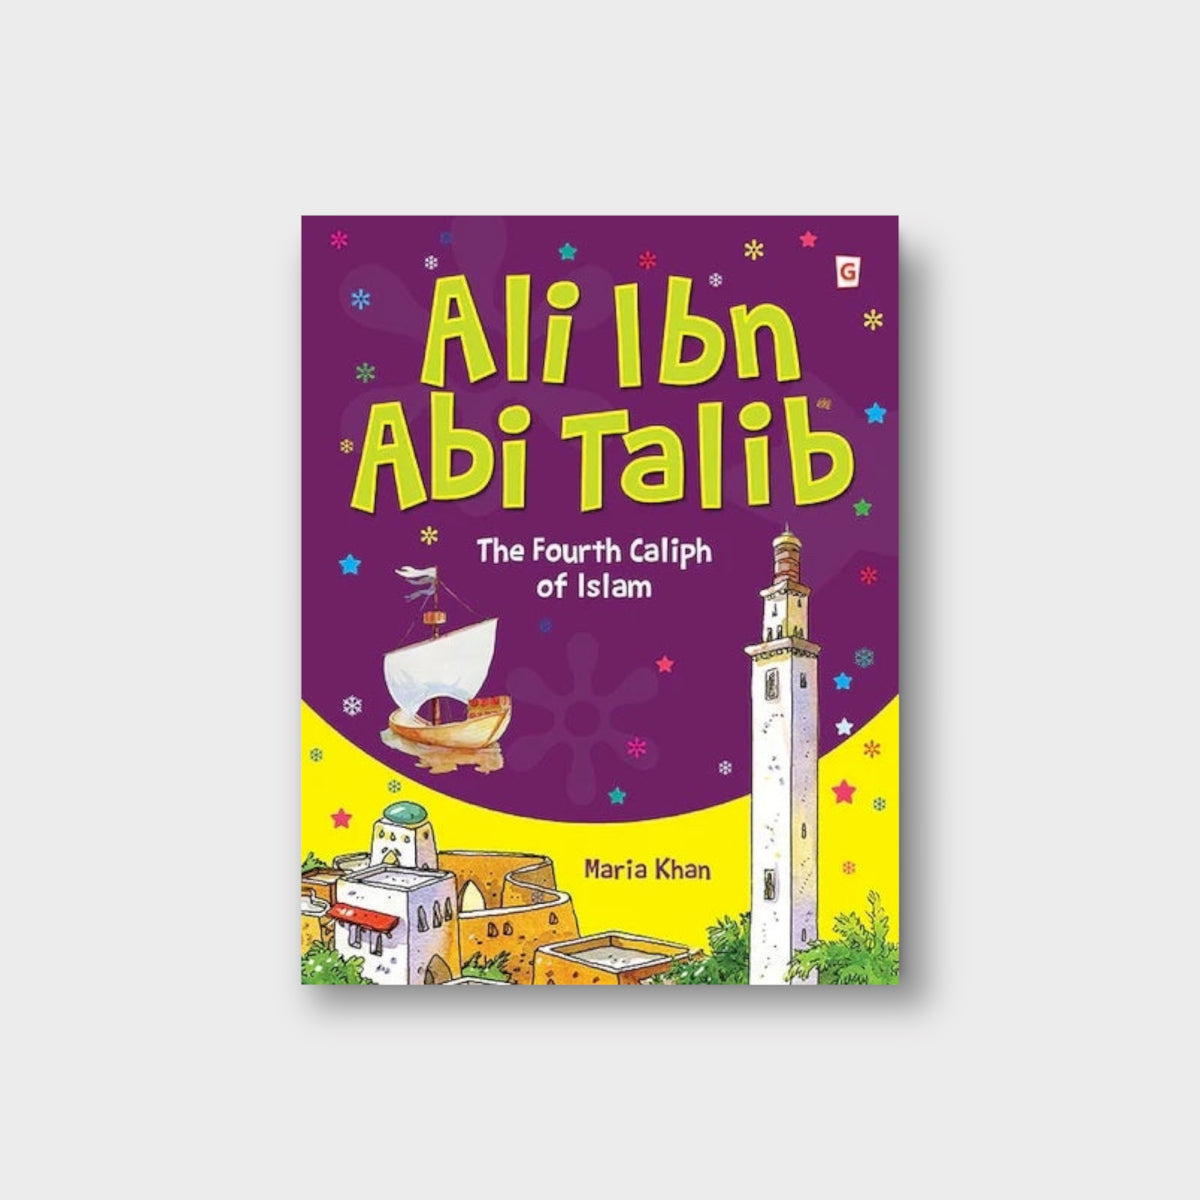 The Story Of Ali IBn Abi Talib